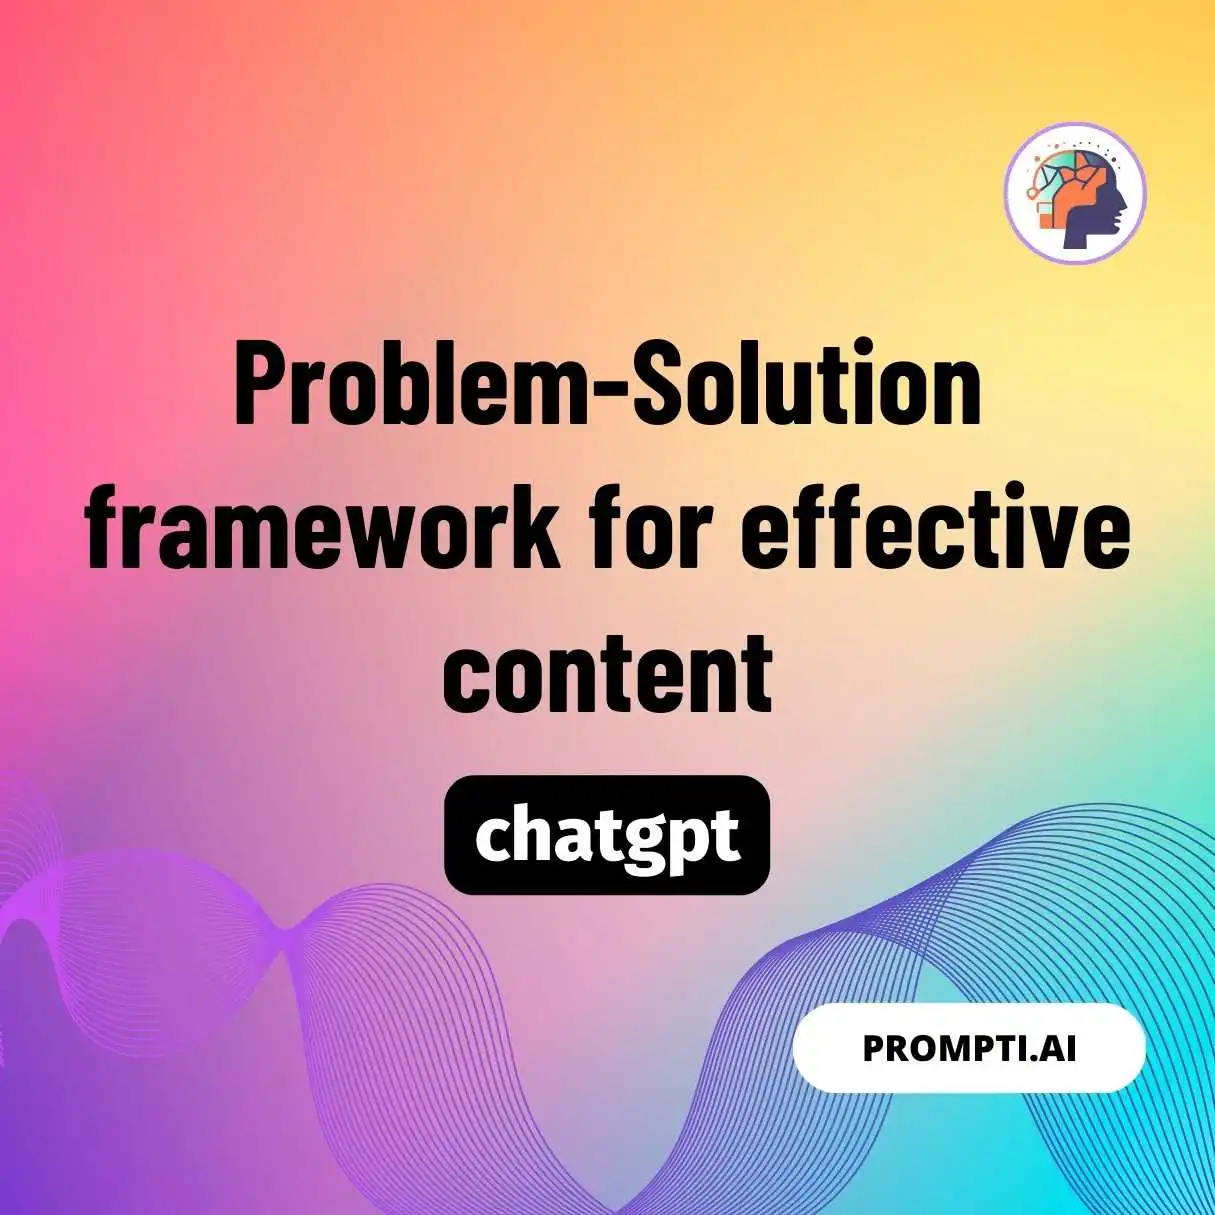 Problem-Solution framework for effective content